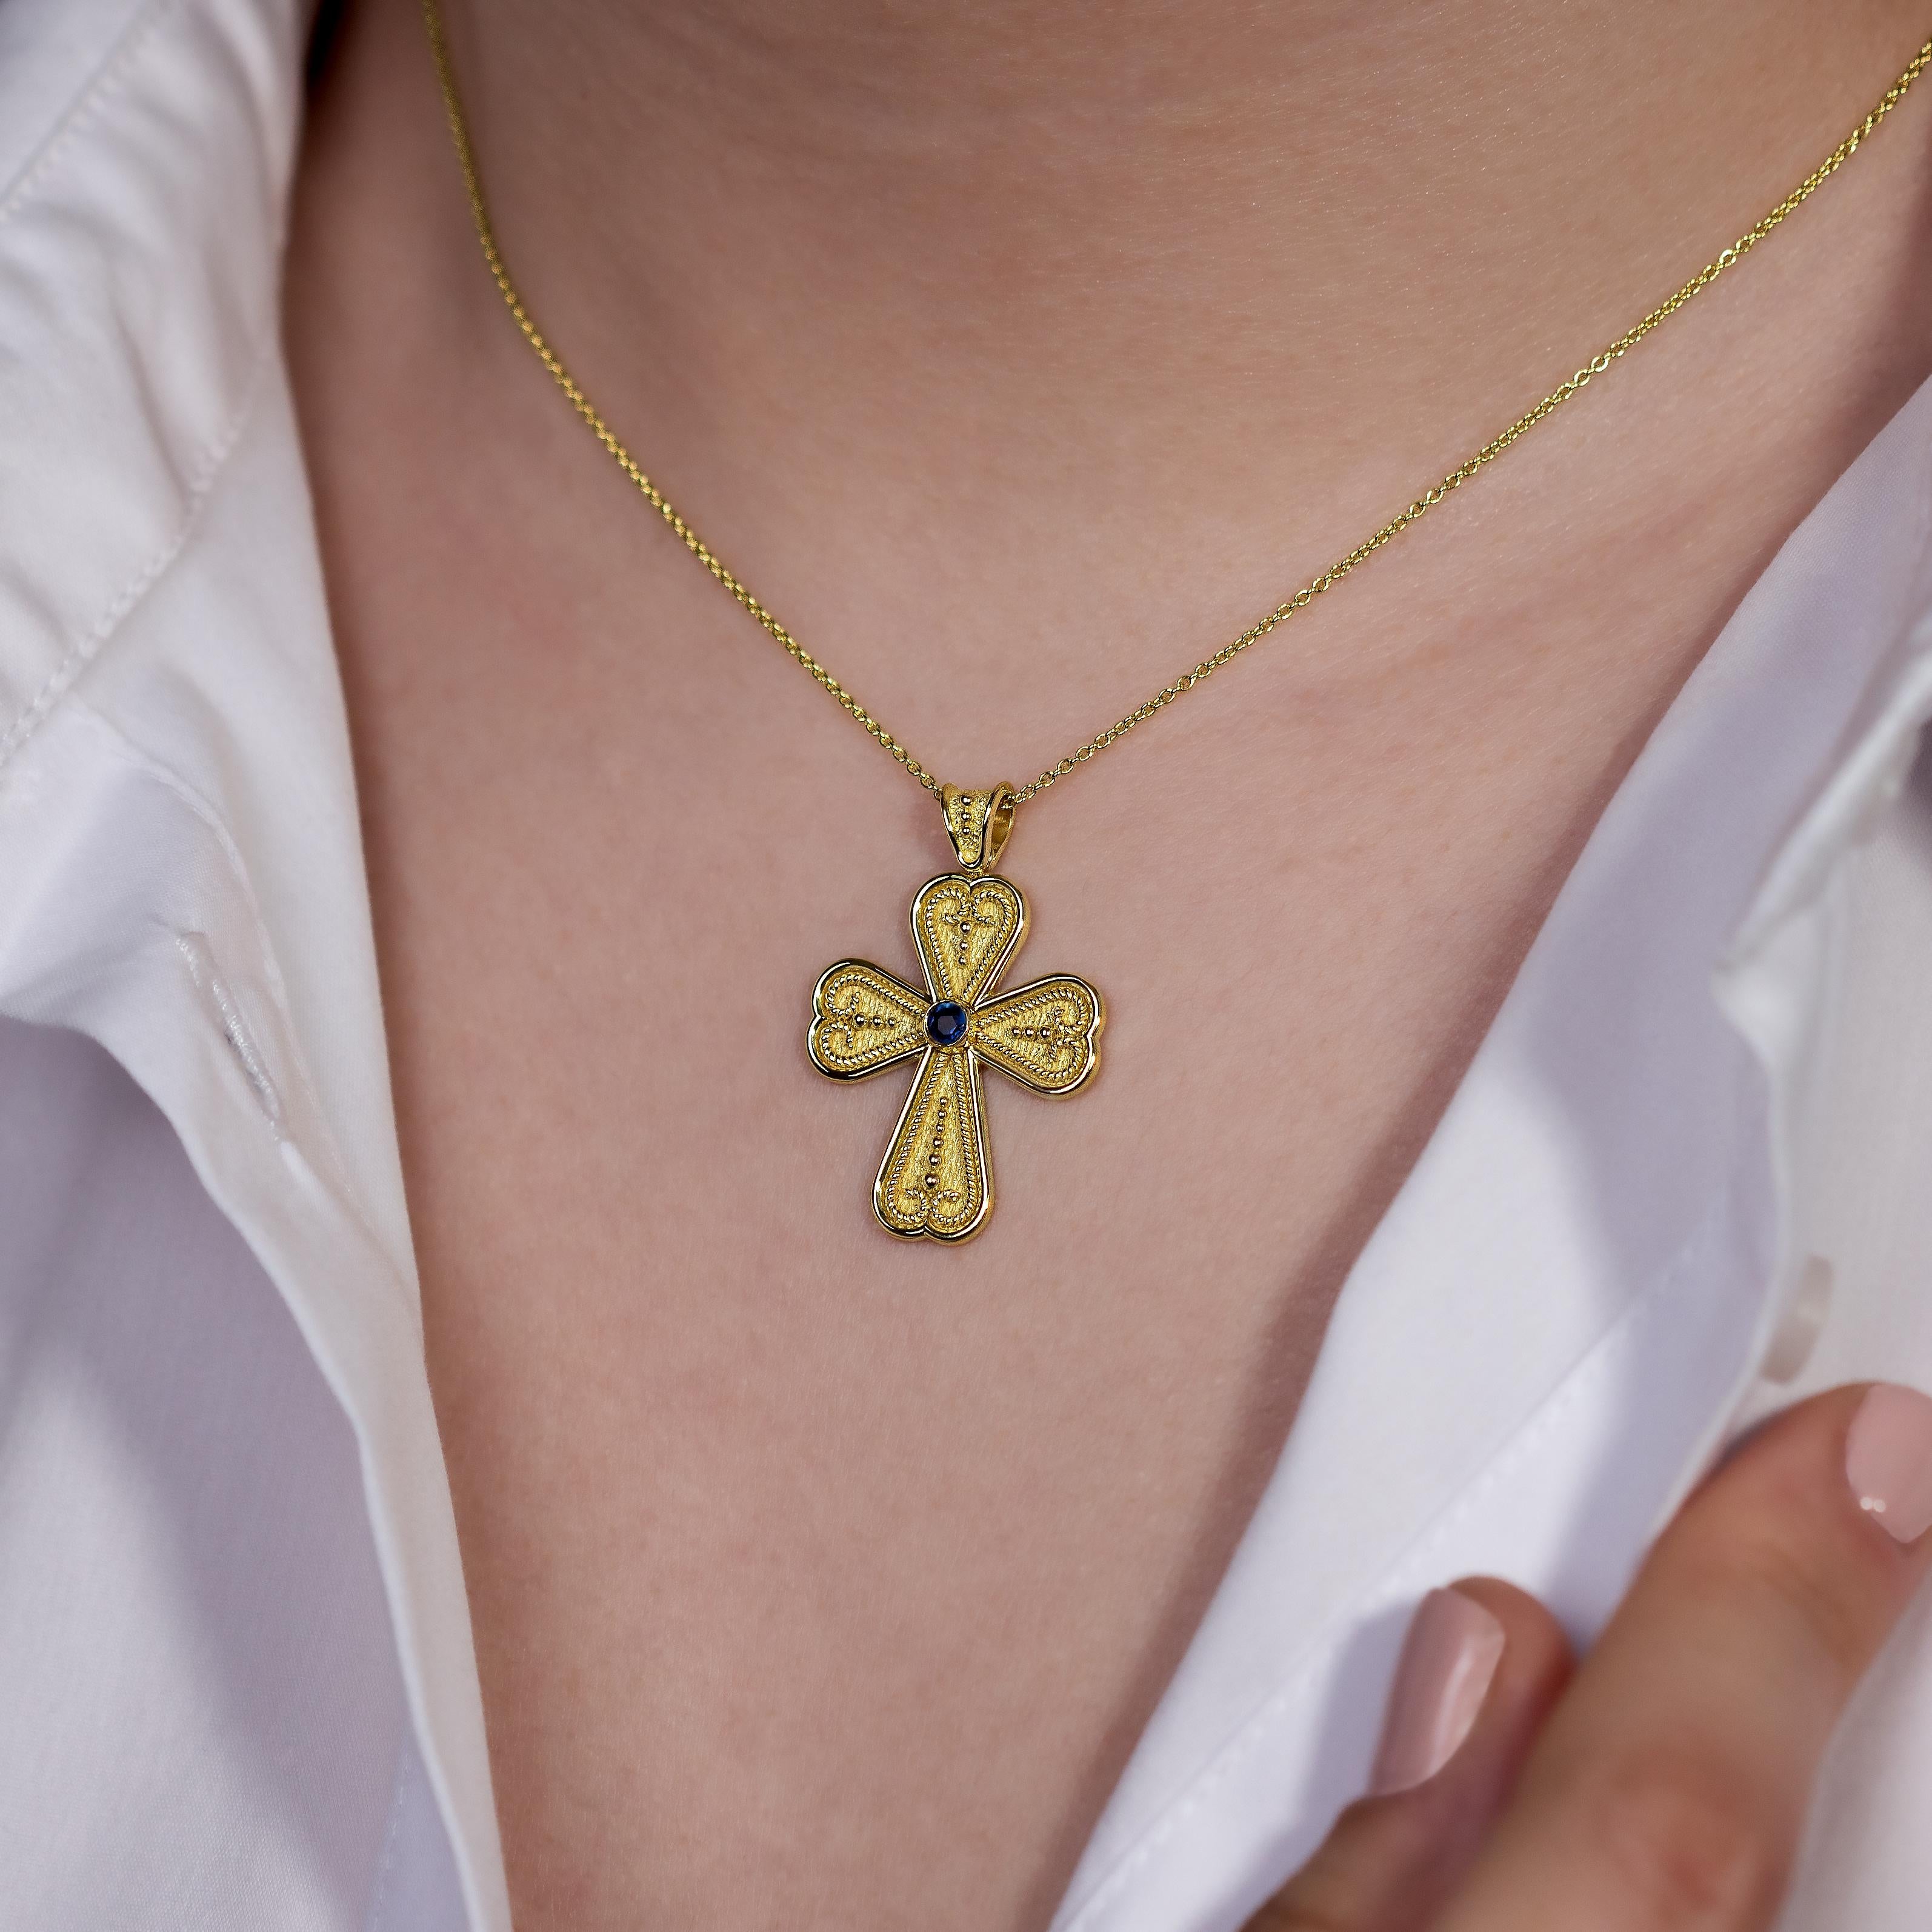 Ornez votre décolleté de la beauté captivante d'un pendentif en forme de croix de cœur byzantine, centré autour d'un saphir unique et resplendissant - un symbole cher d'amour durable et d'art complexe qui transcende le temps.

100% fait à la main